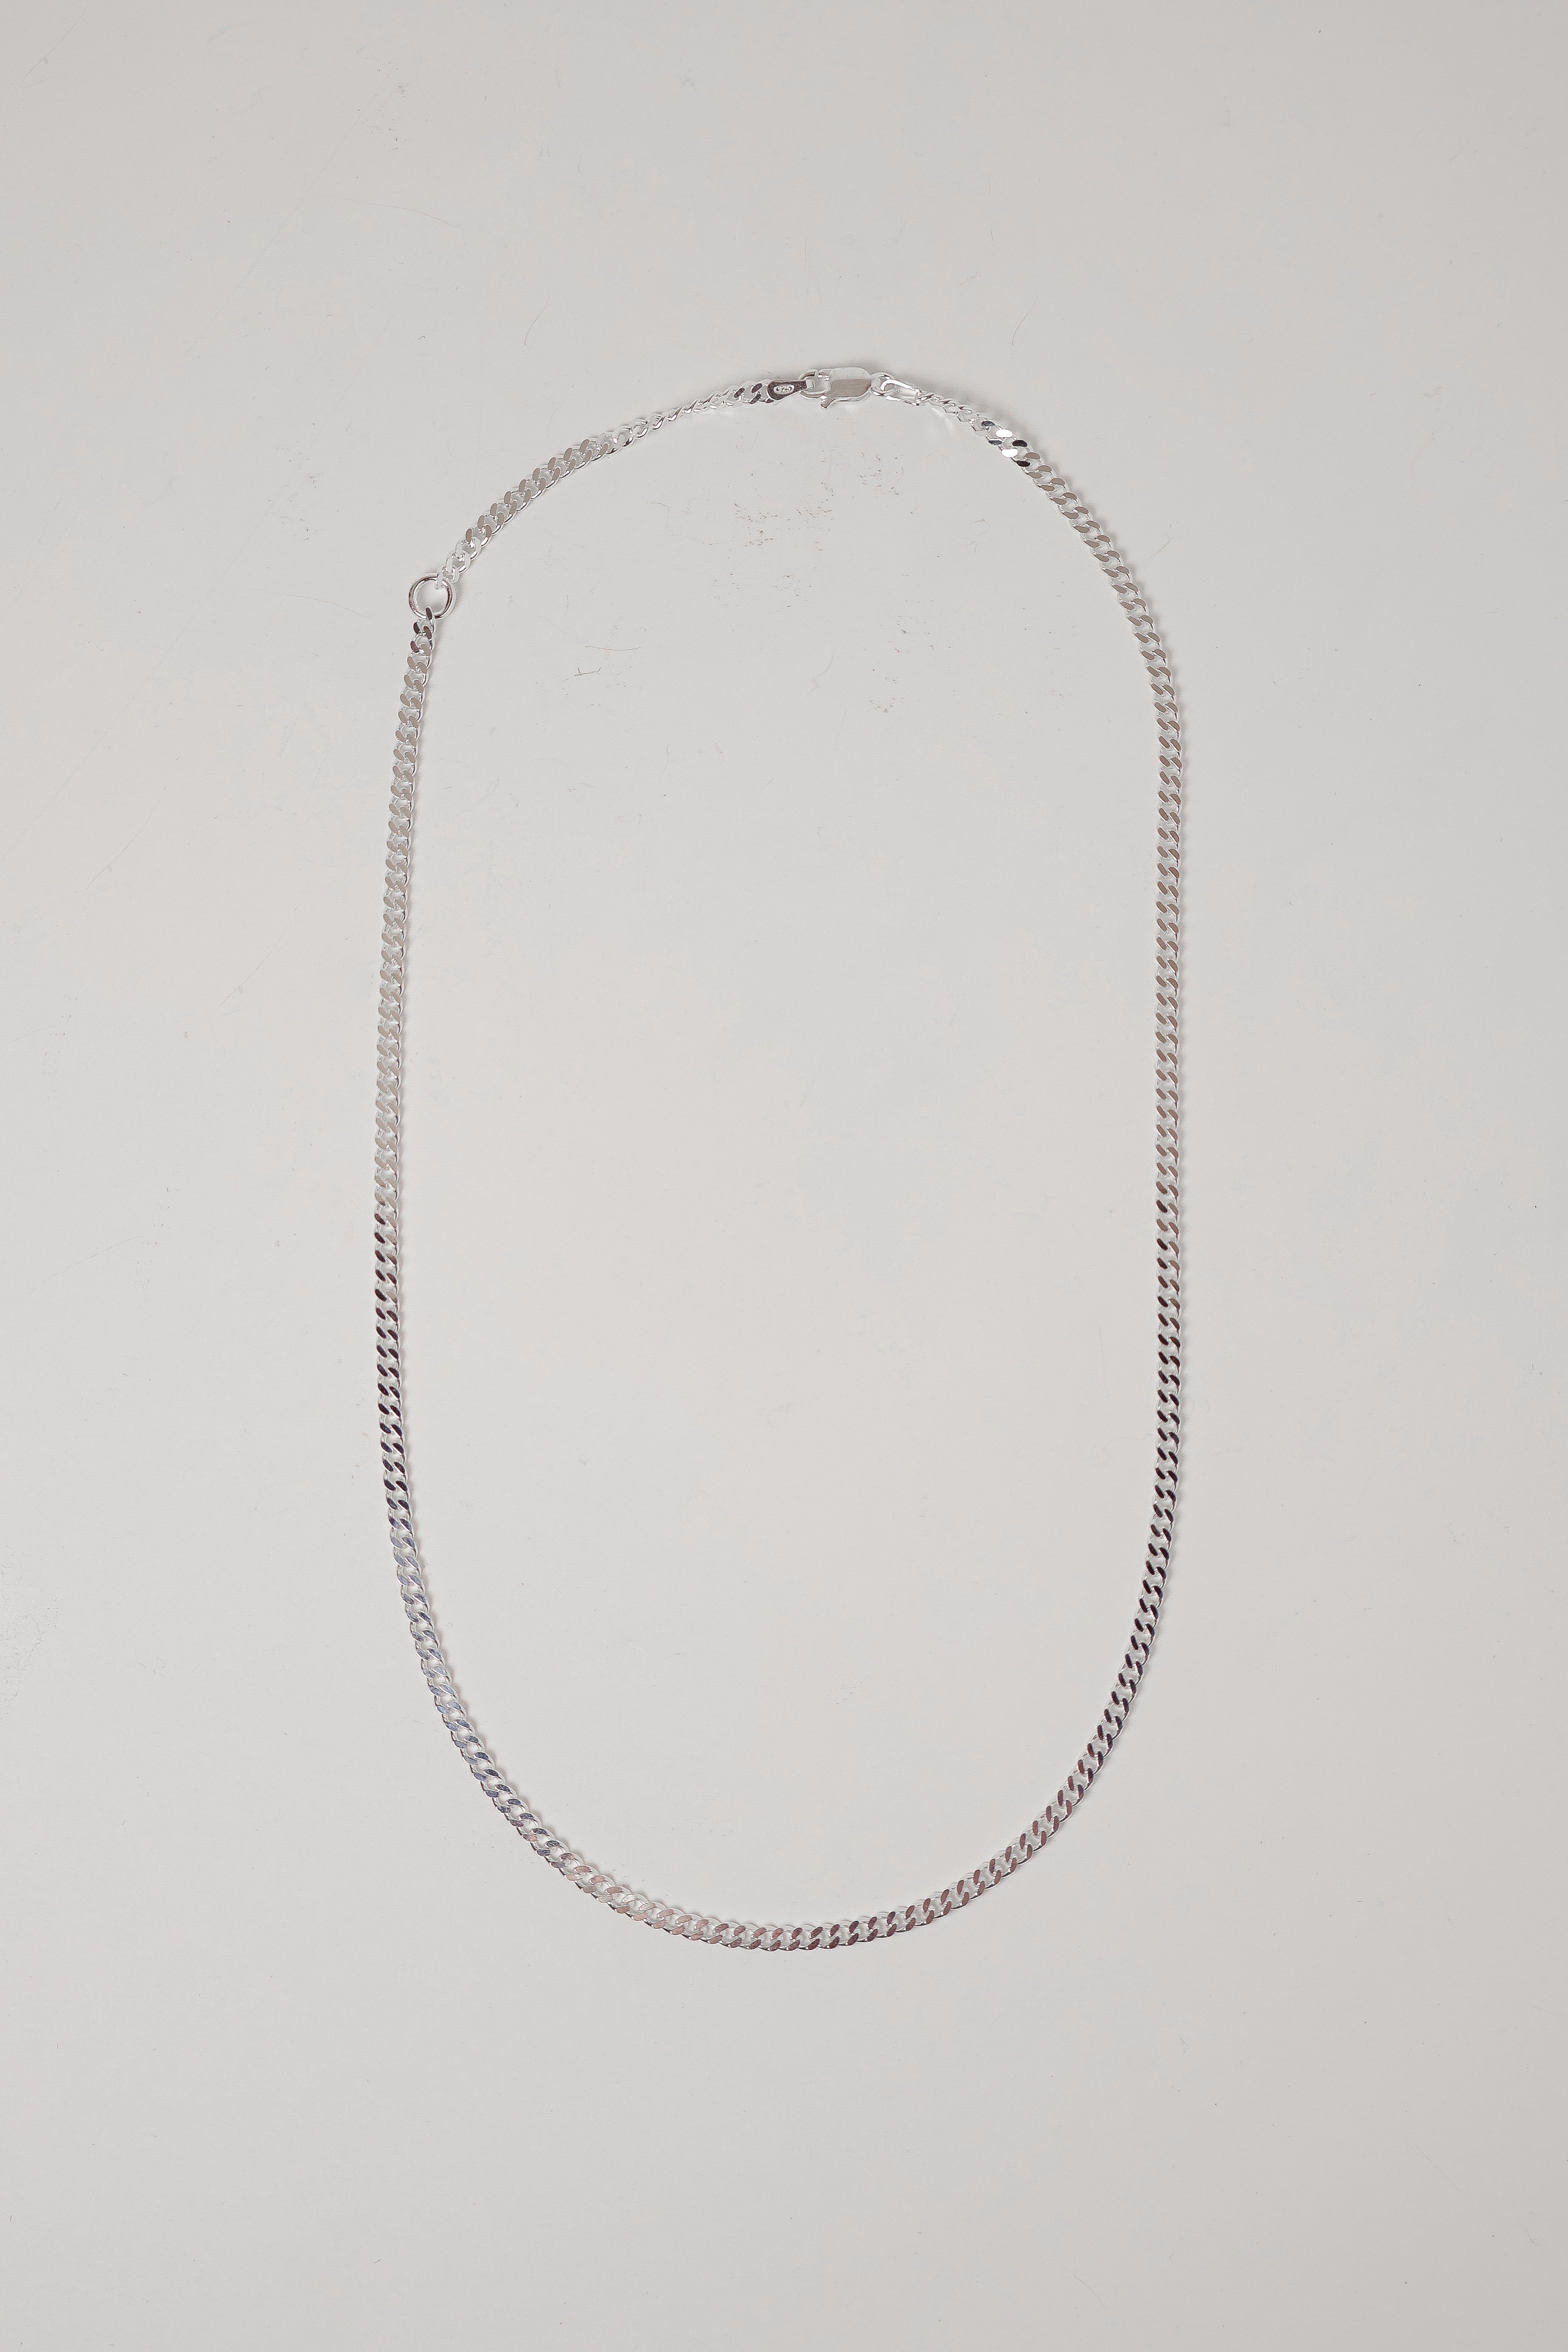 Curb Chain | $189